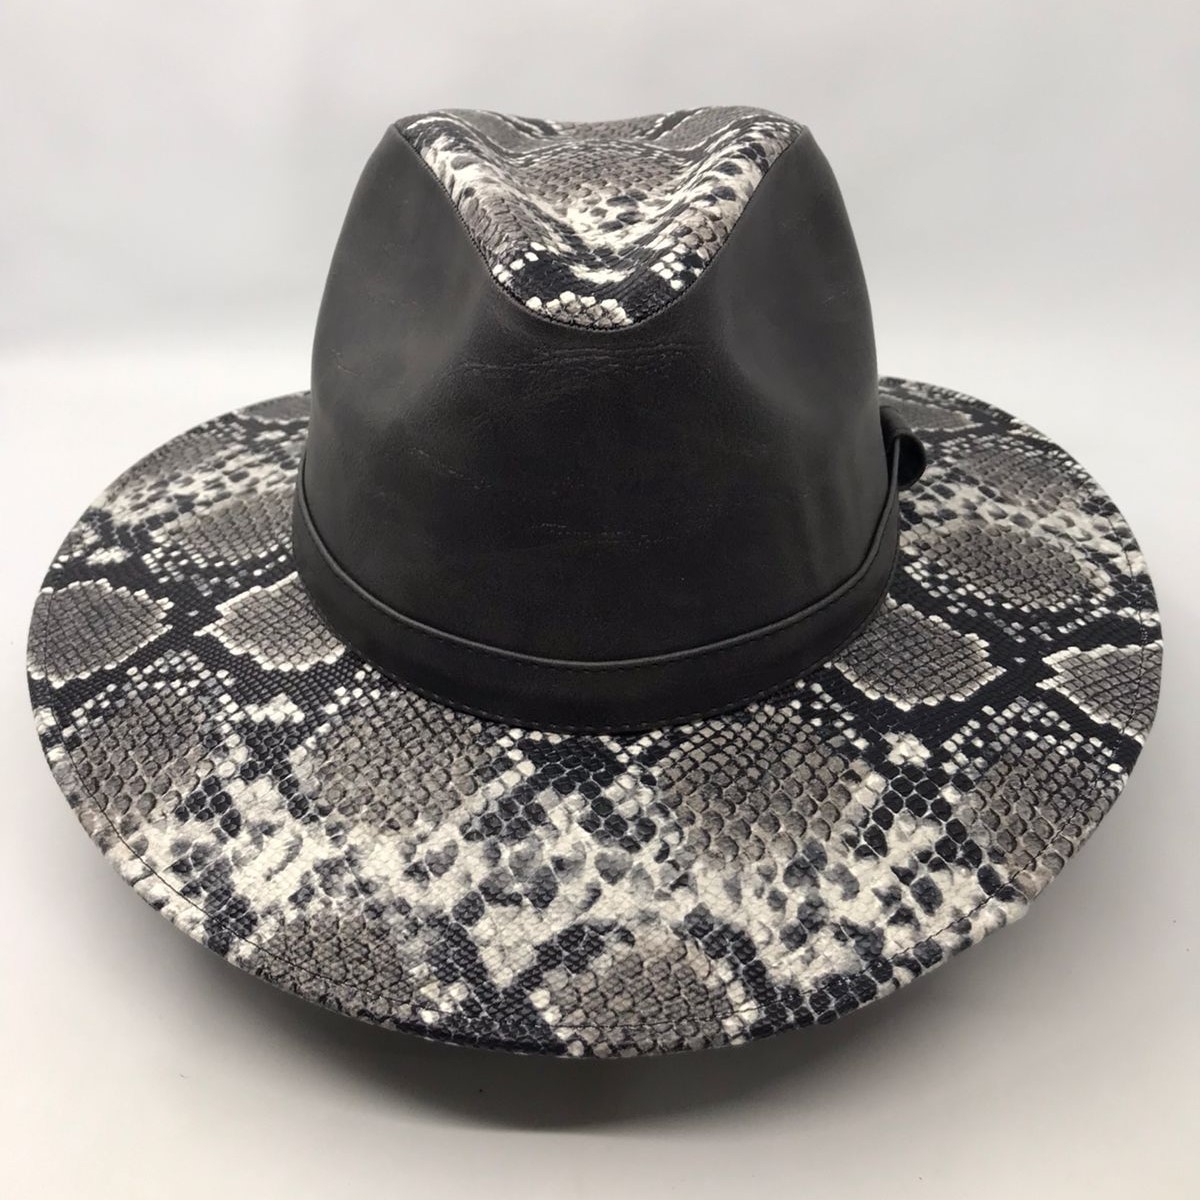 Vinipiel de horma indiana, color negro estampado víbora 0174 Laredo Hats Dama Laredo Hats